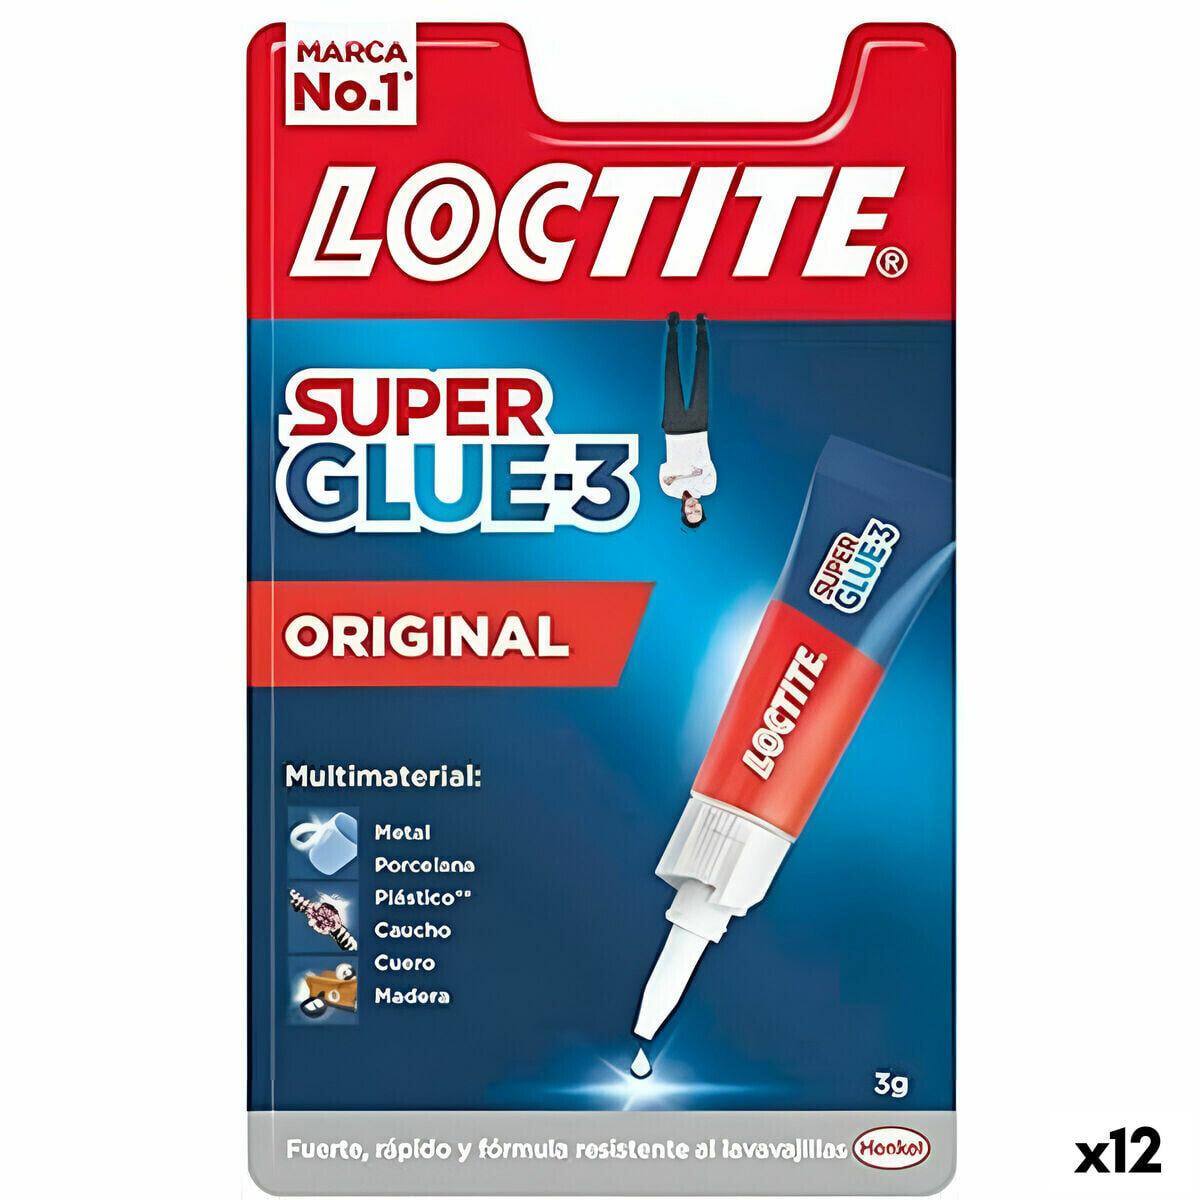 Instant Adhesive Loctite Super Glue 3 3 g (12 Units)